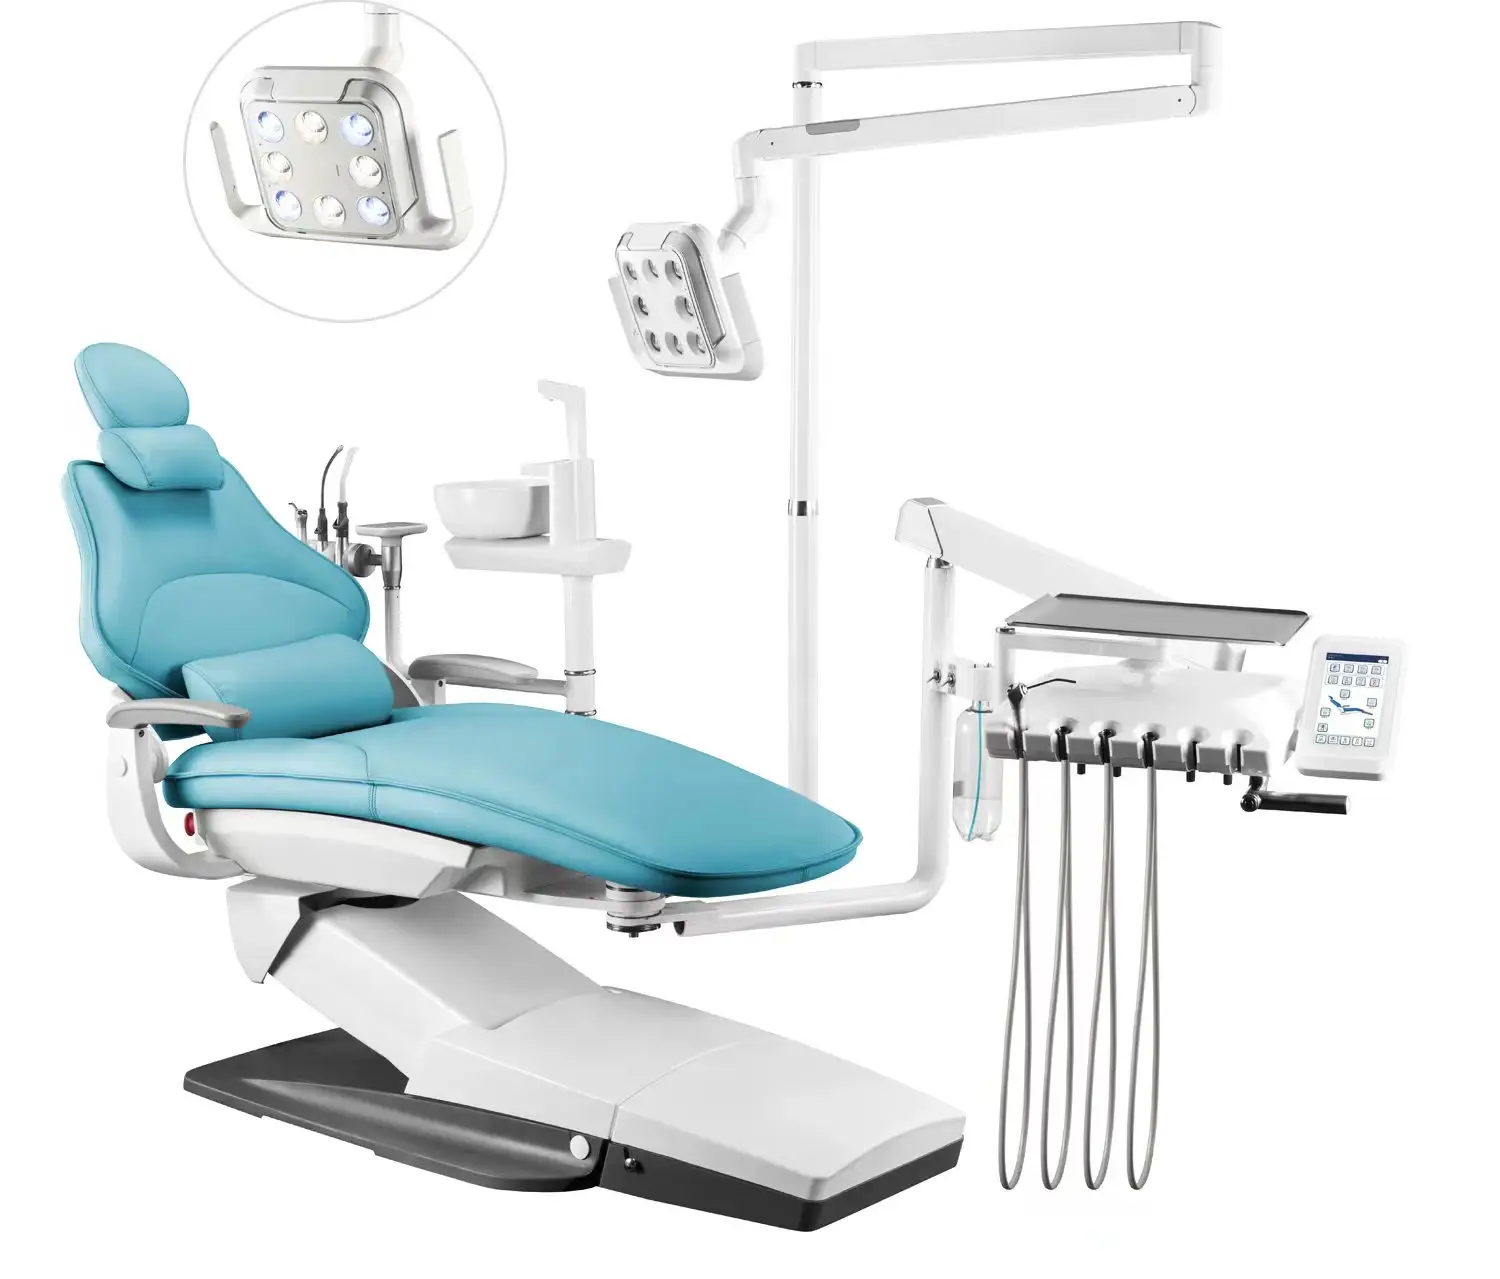 A4 pour gaucher type américain haut de gamme de luxe CE dentaire médical électrique ensemble complet fauteuil dentaire équipement d'unité